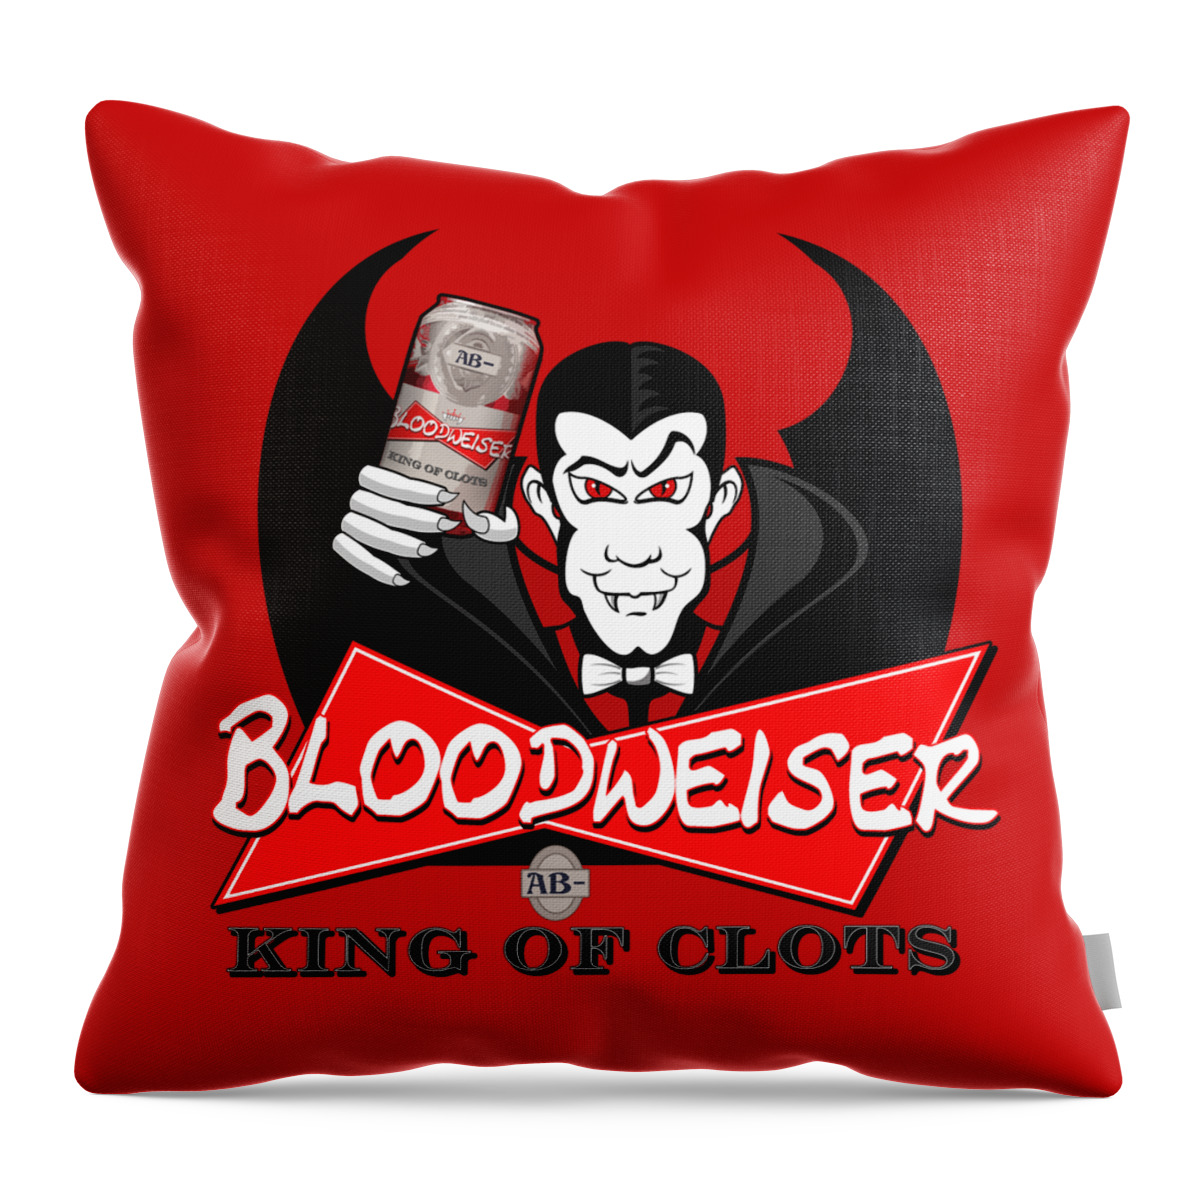 Bloodweiser Throw Pillow featuring the digital art Bloodweiser by Rick Bartrand